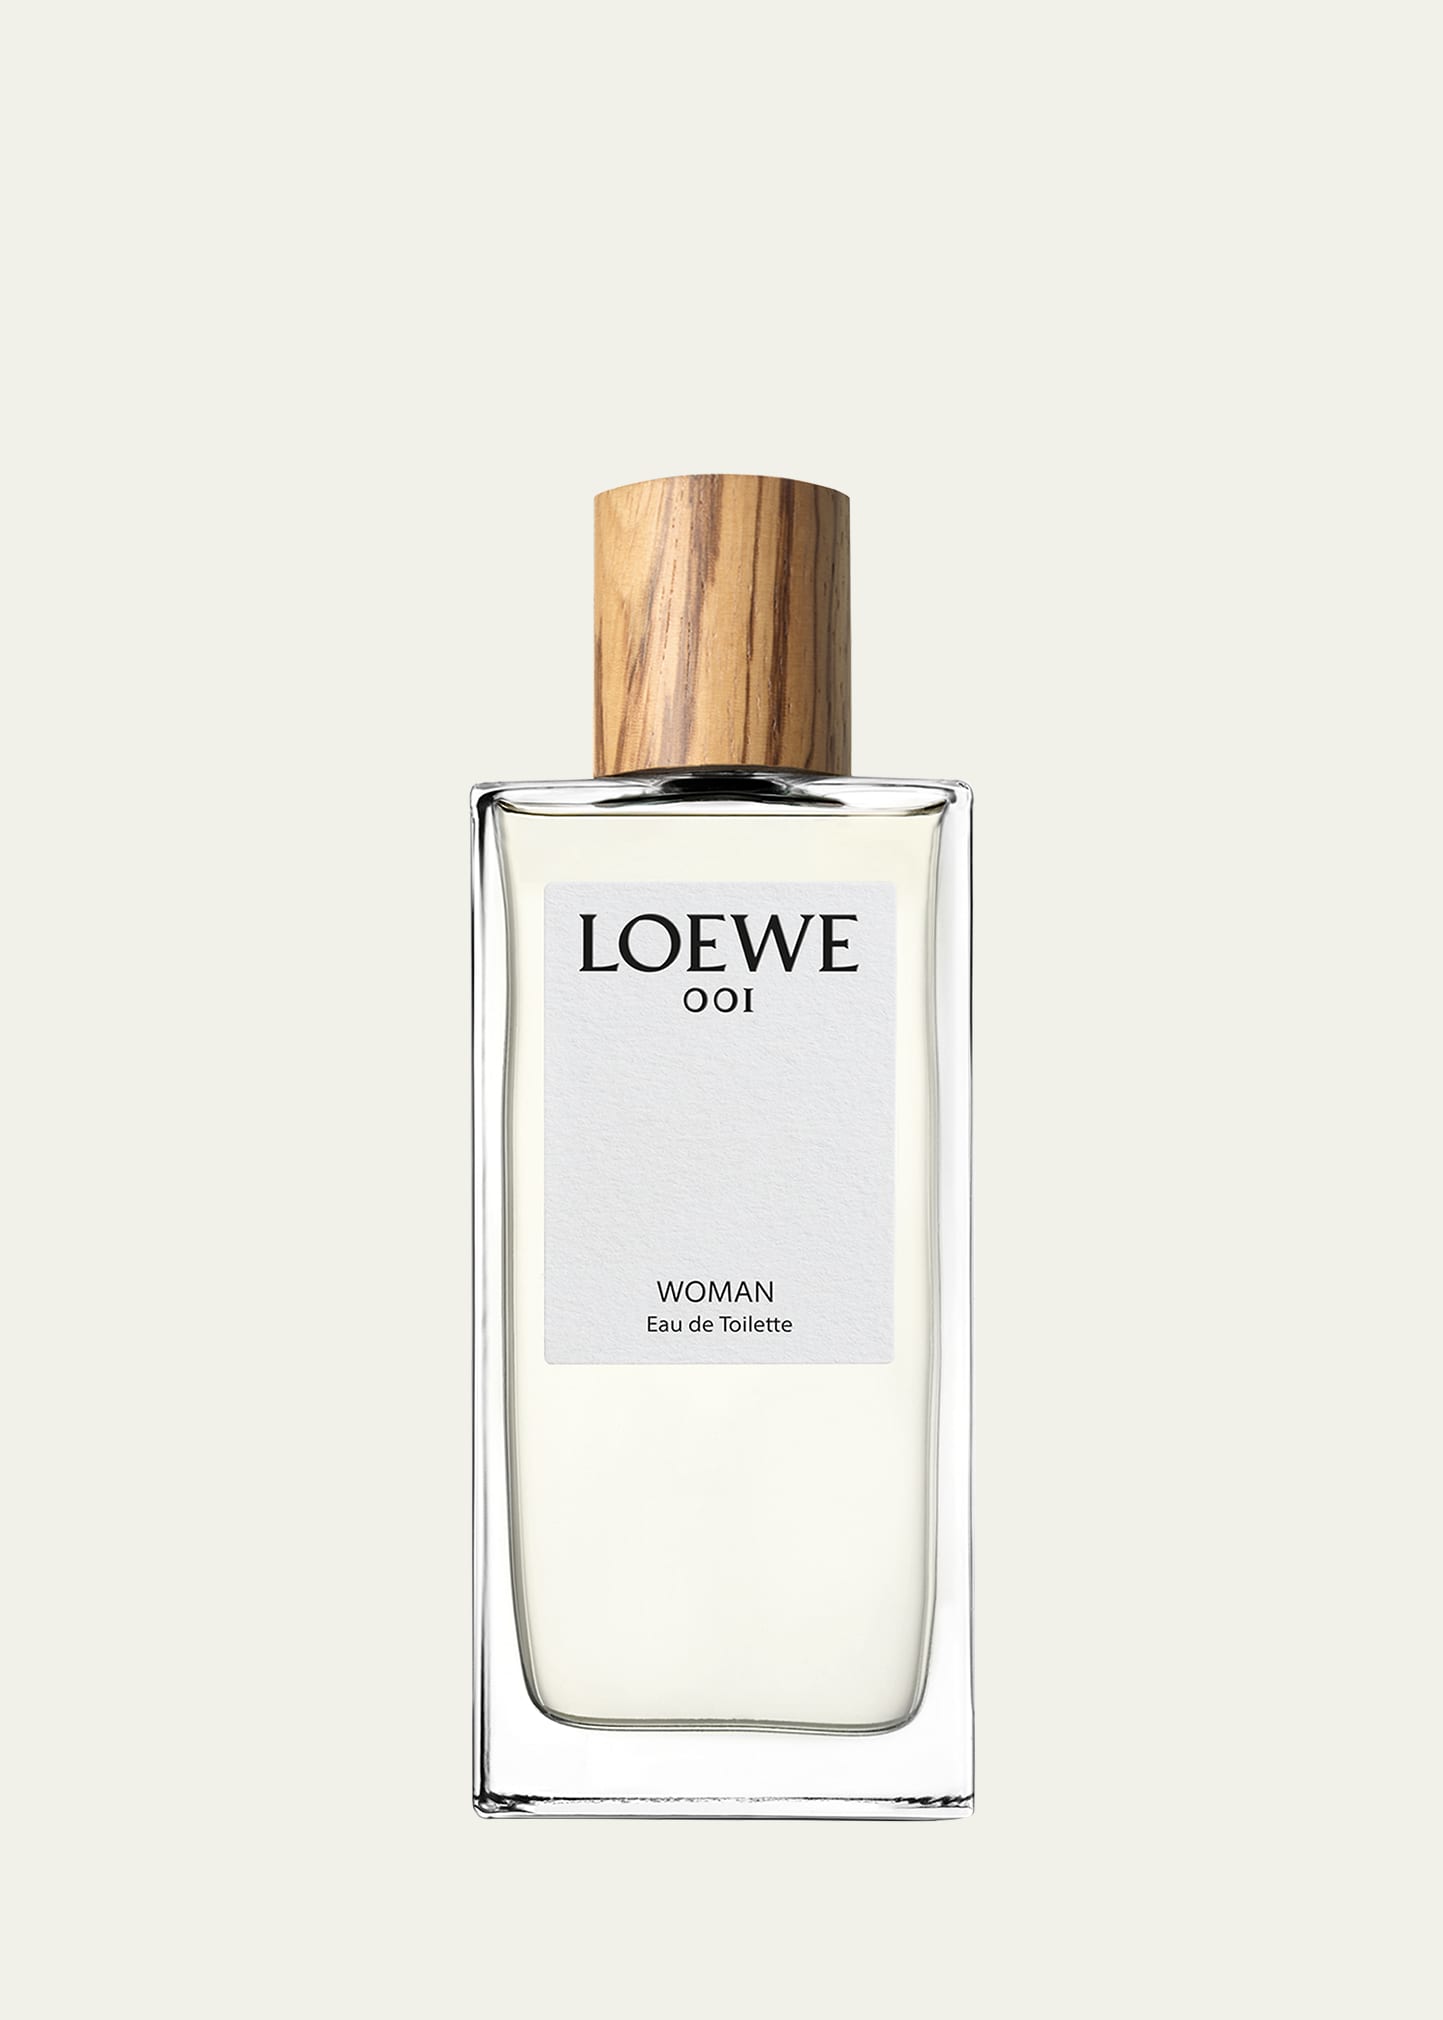 Loewe 3.4 oz. 001 Woman Eau de Toilette